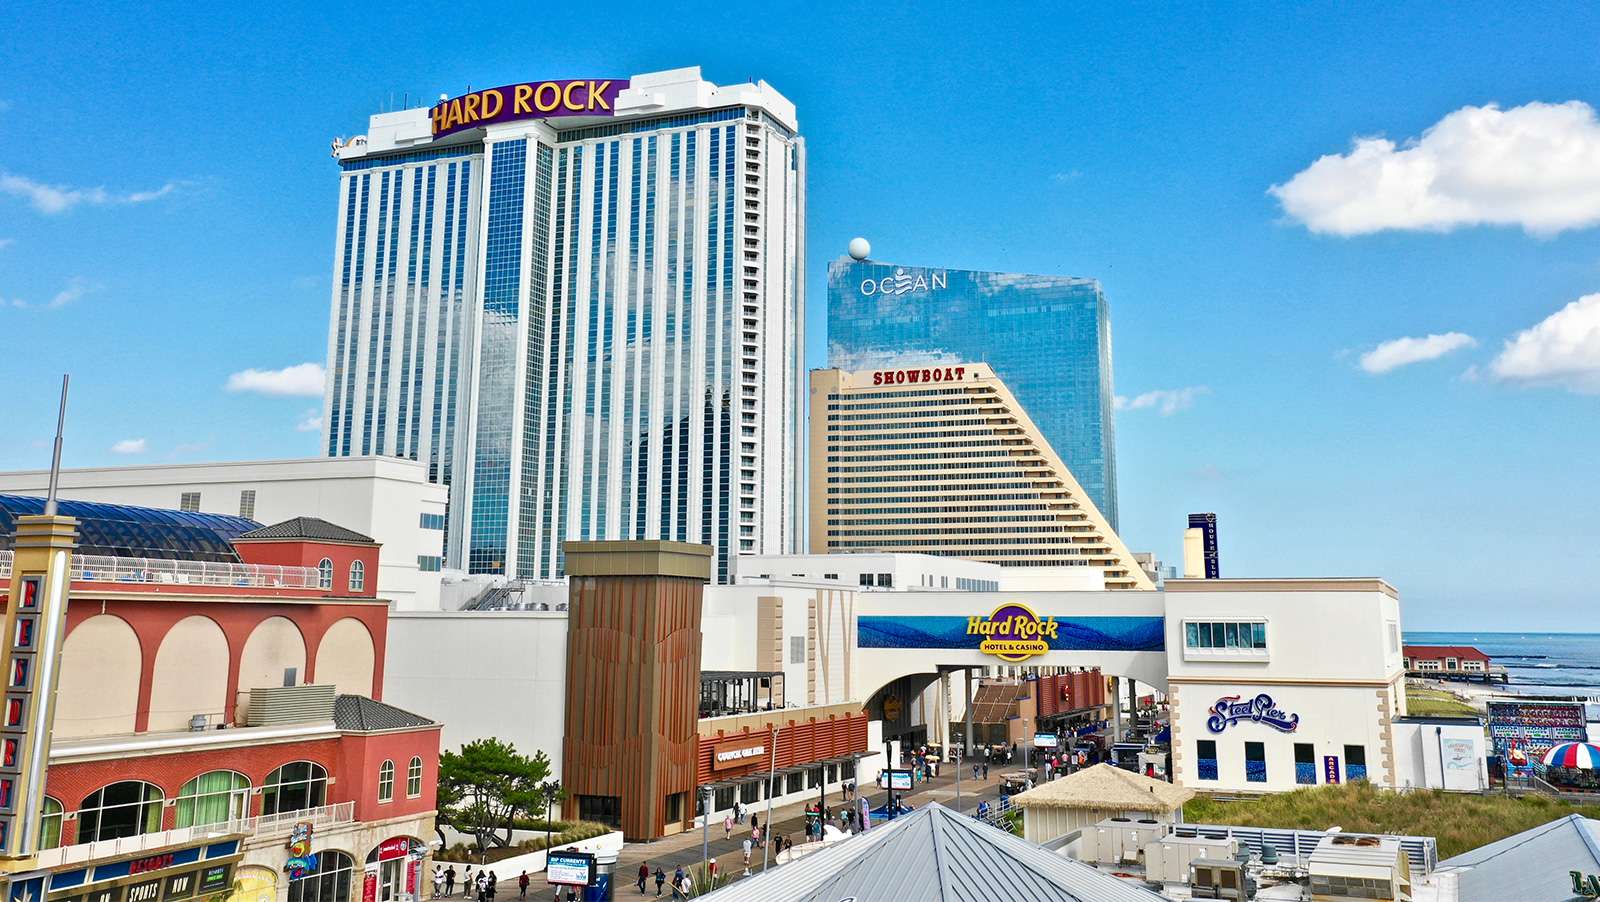 Atlantic City casinos November revenue